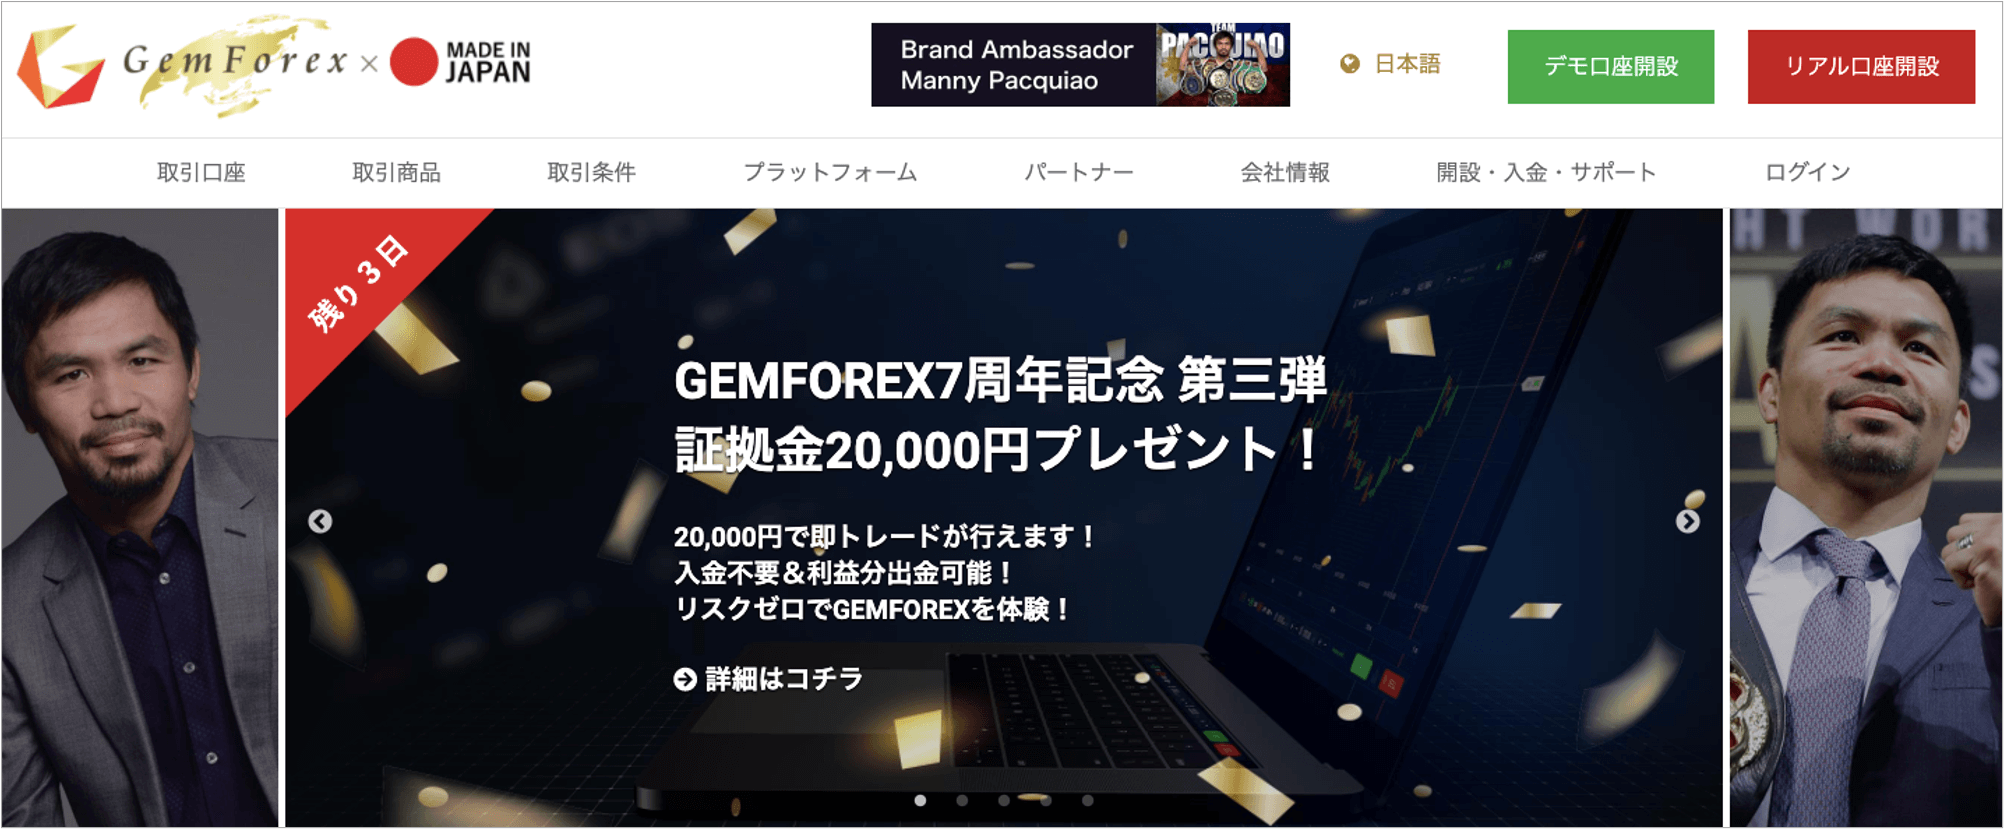 GEMFOREX 公式サイト画像